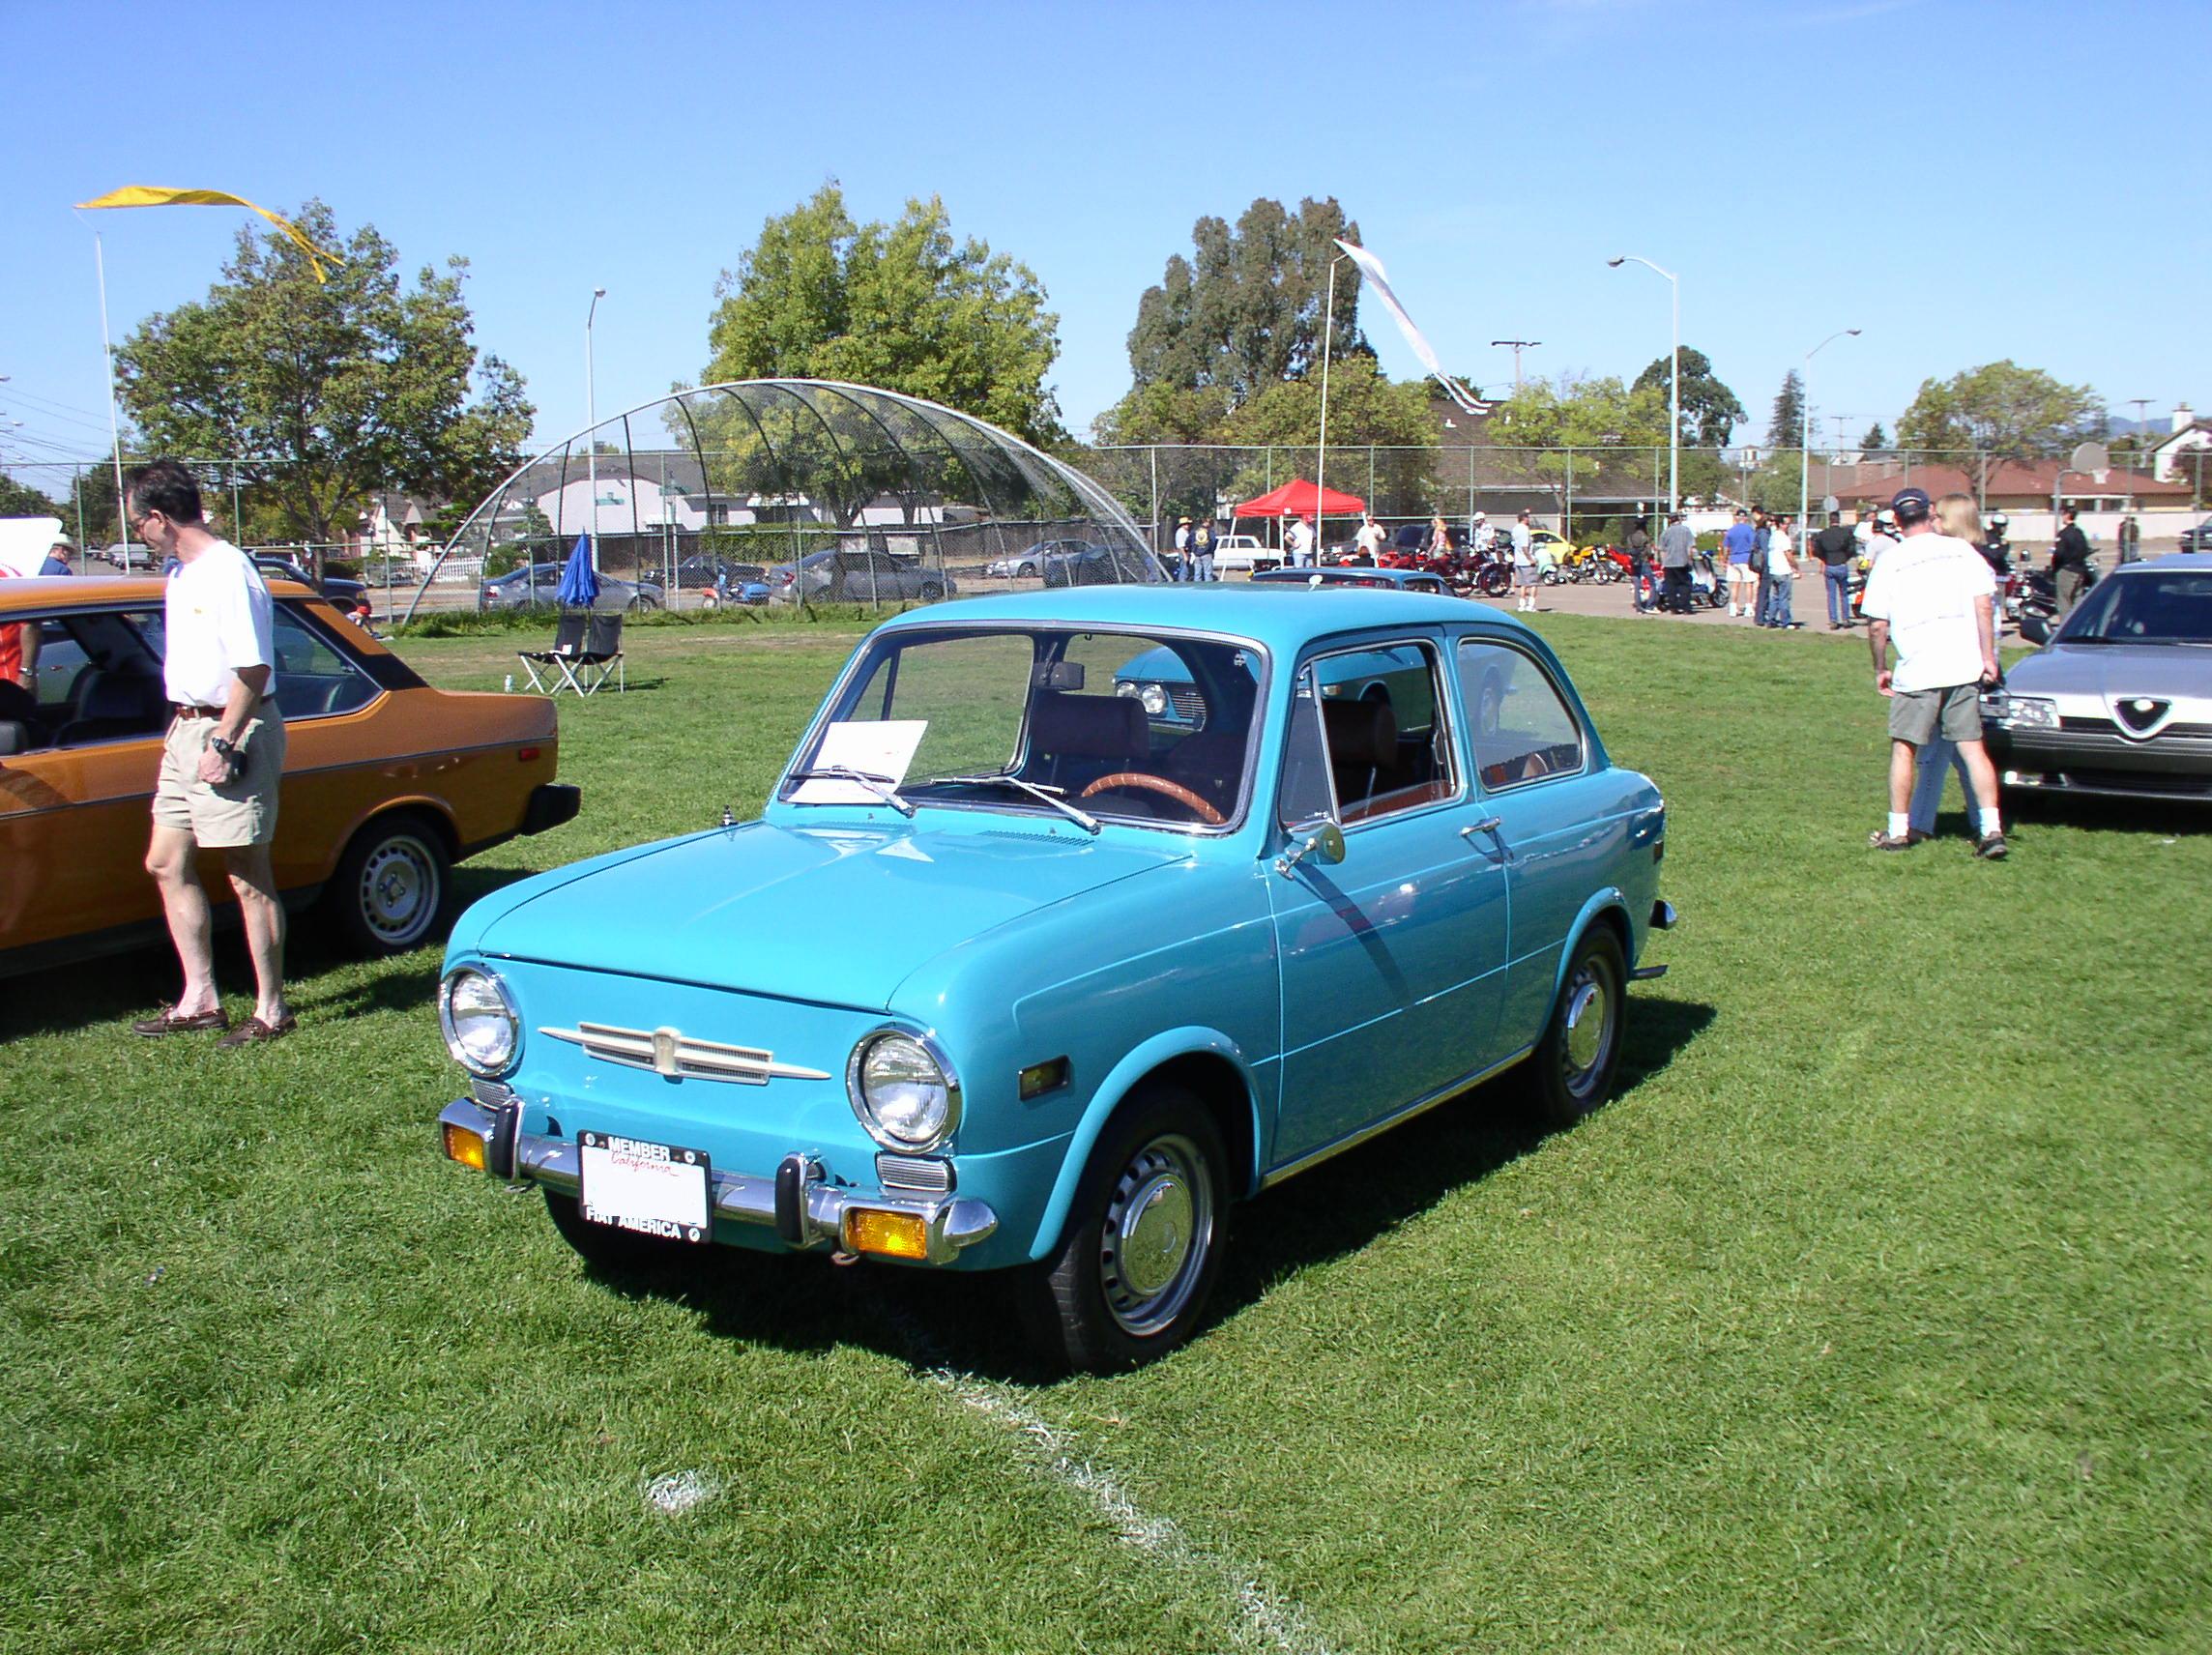 Fiat 650